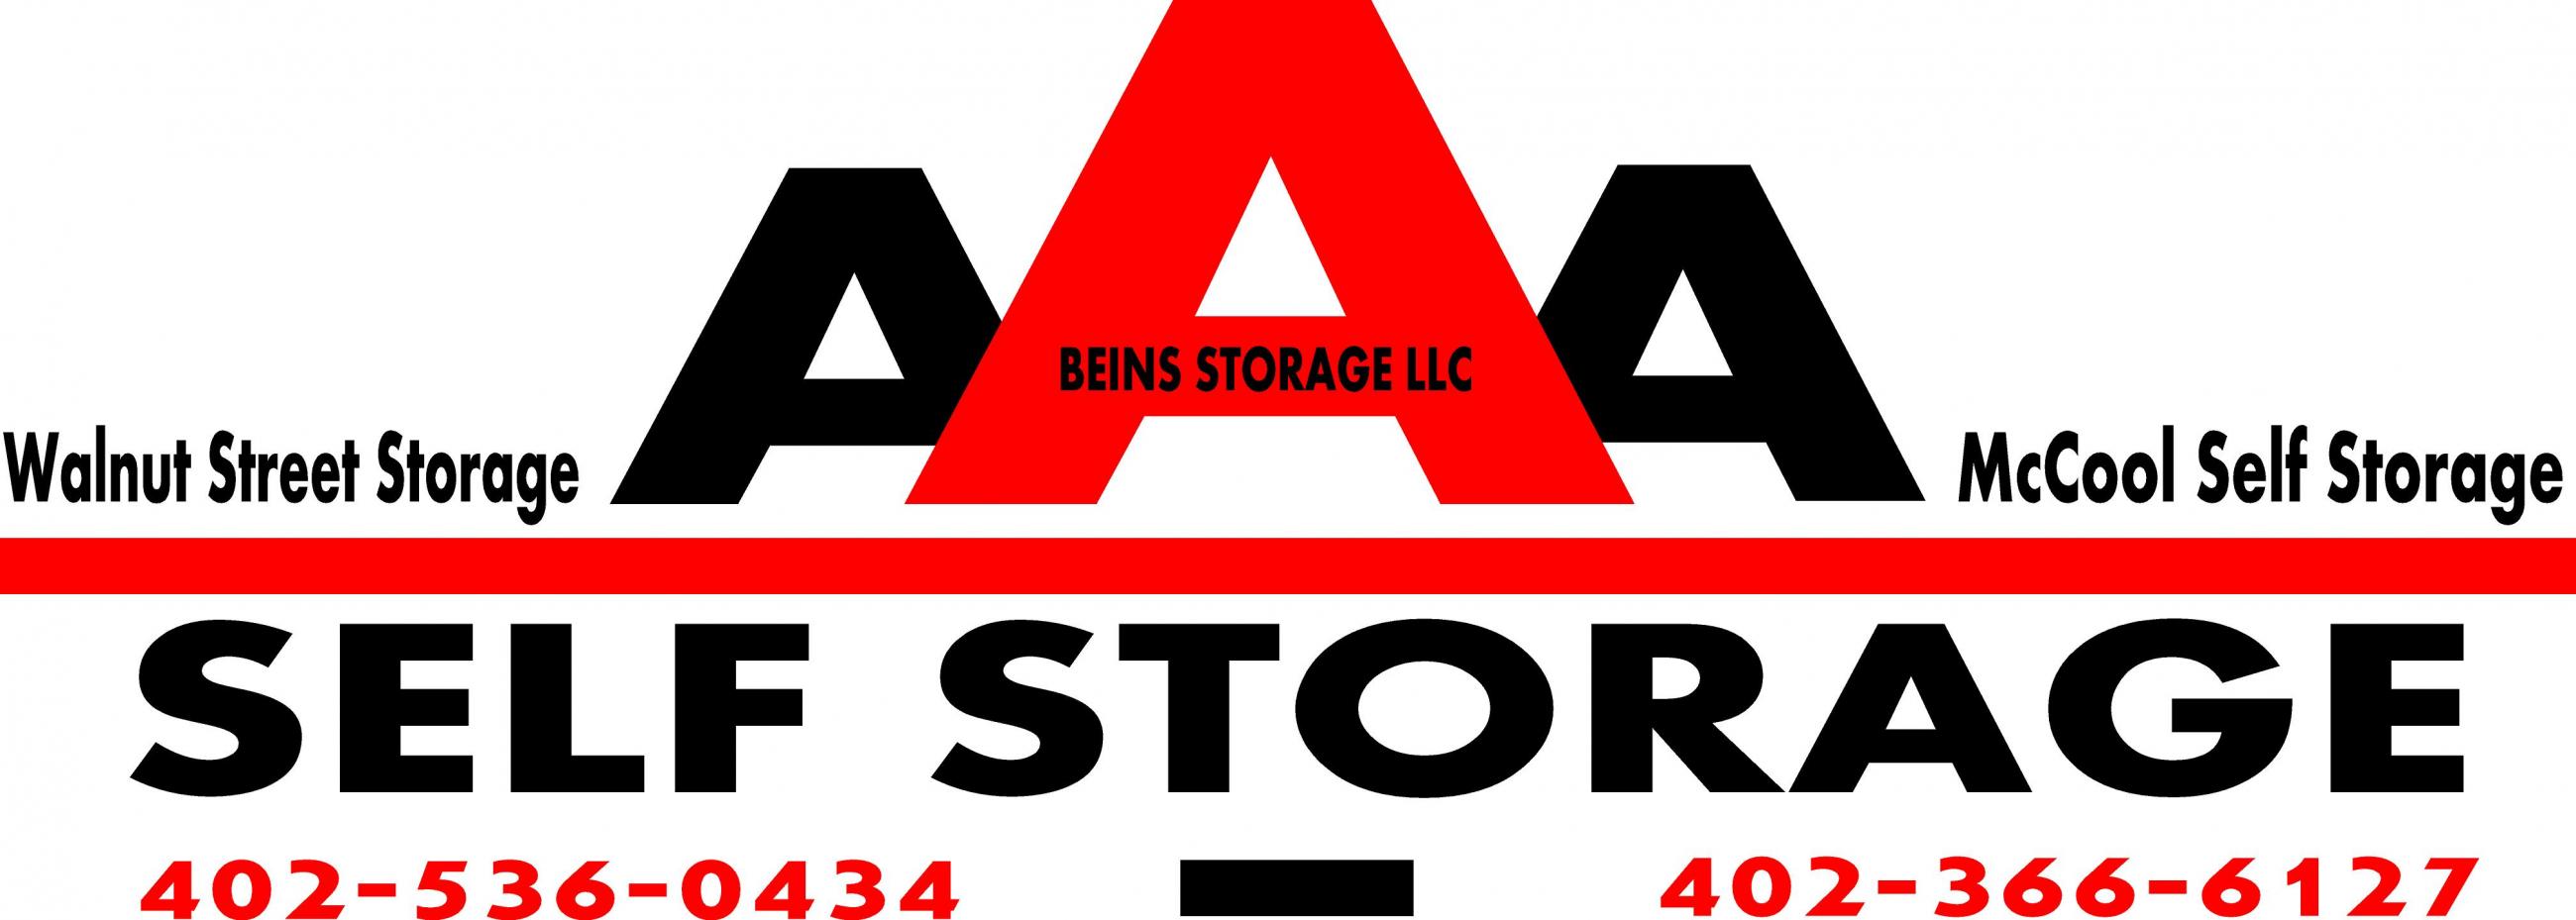 Beins Storage LLC's Image